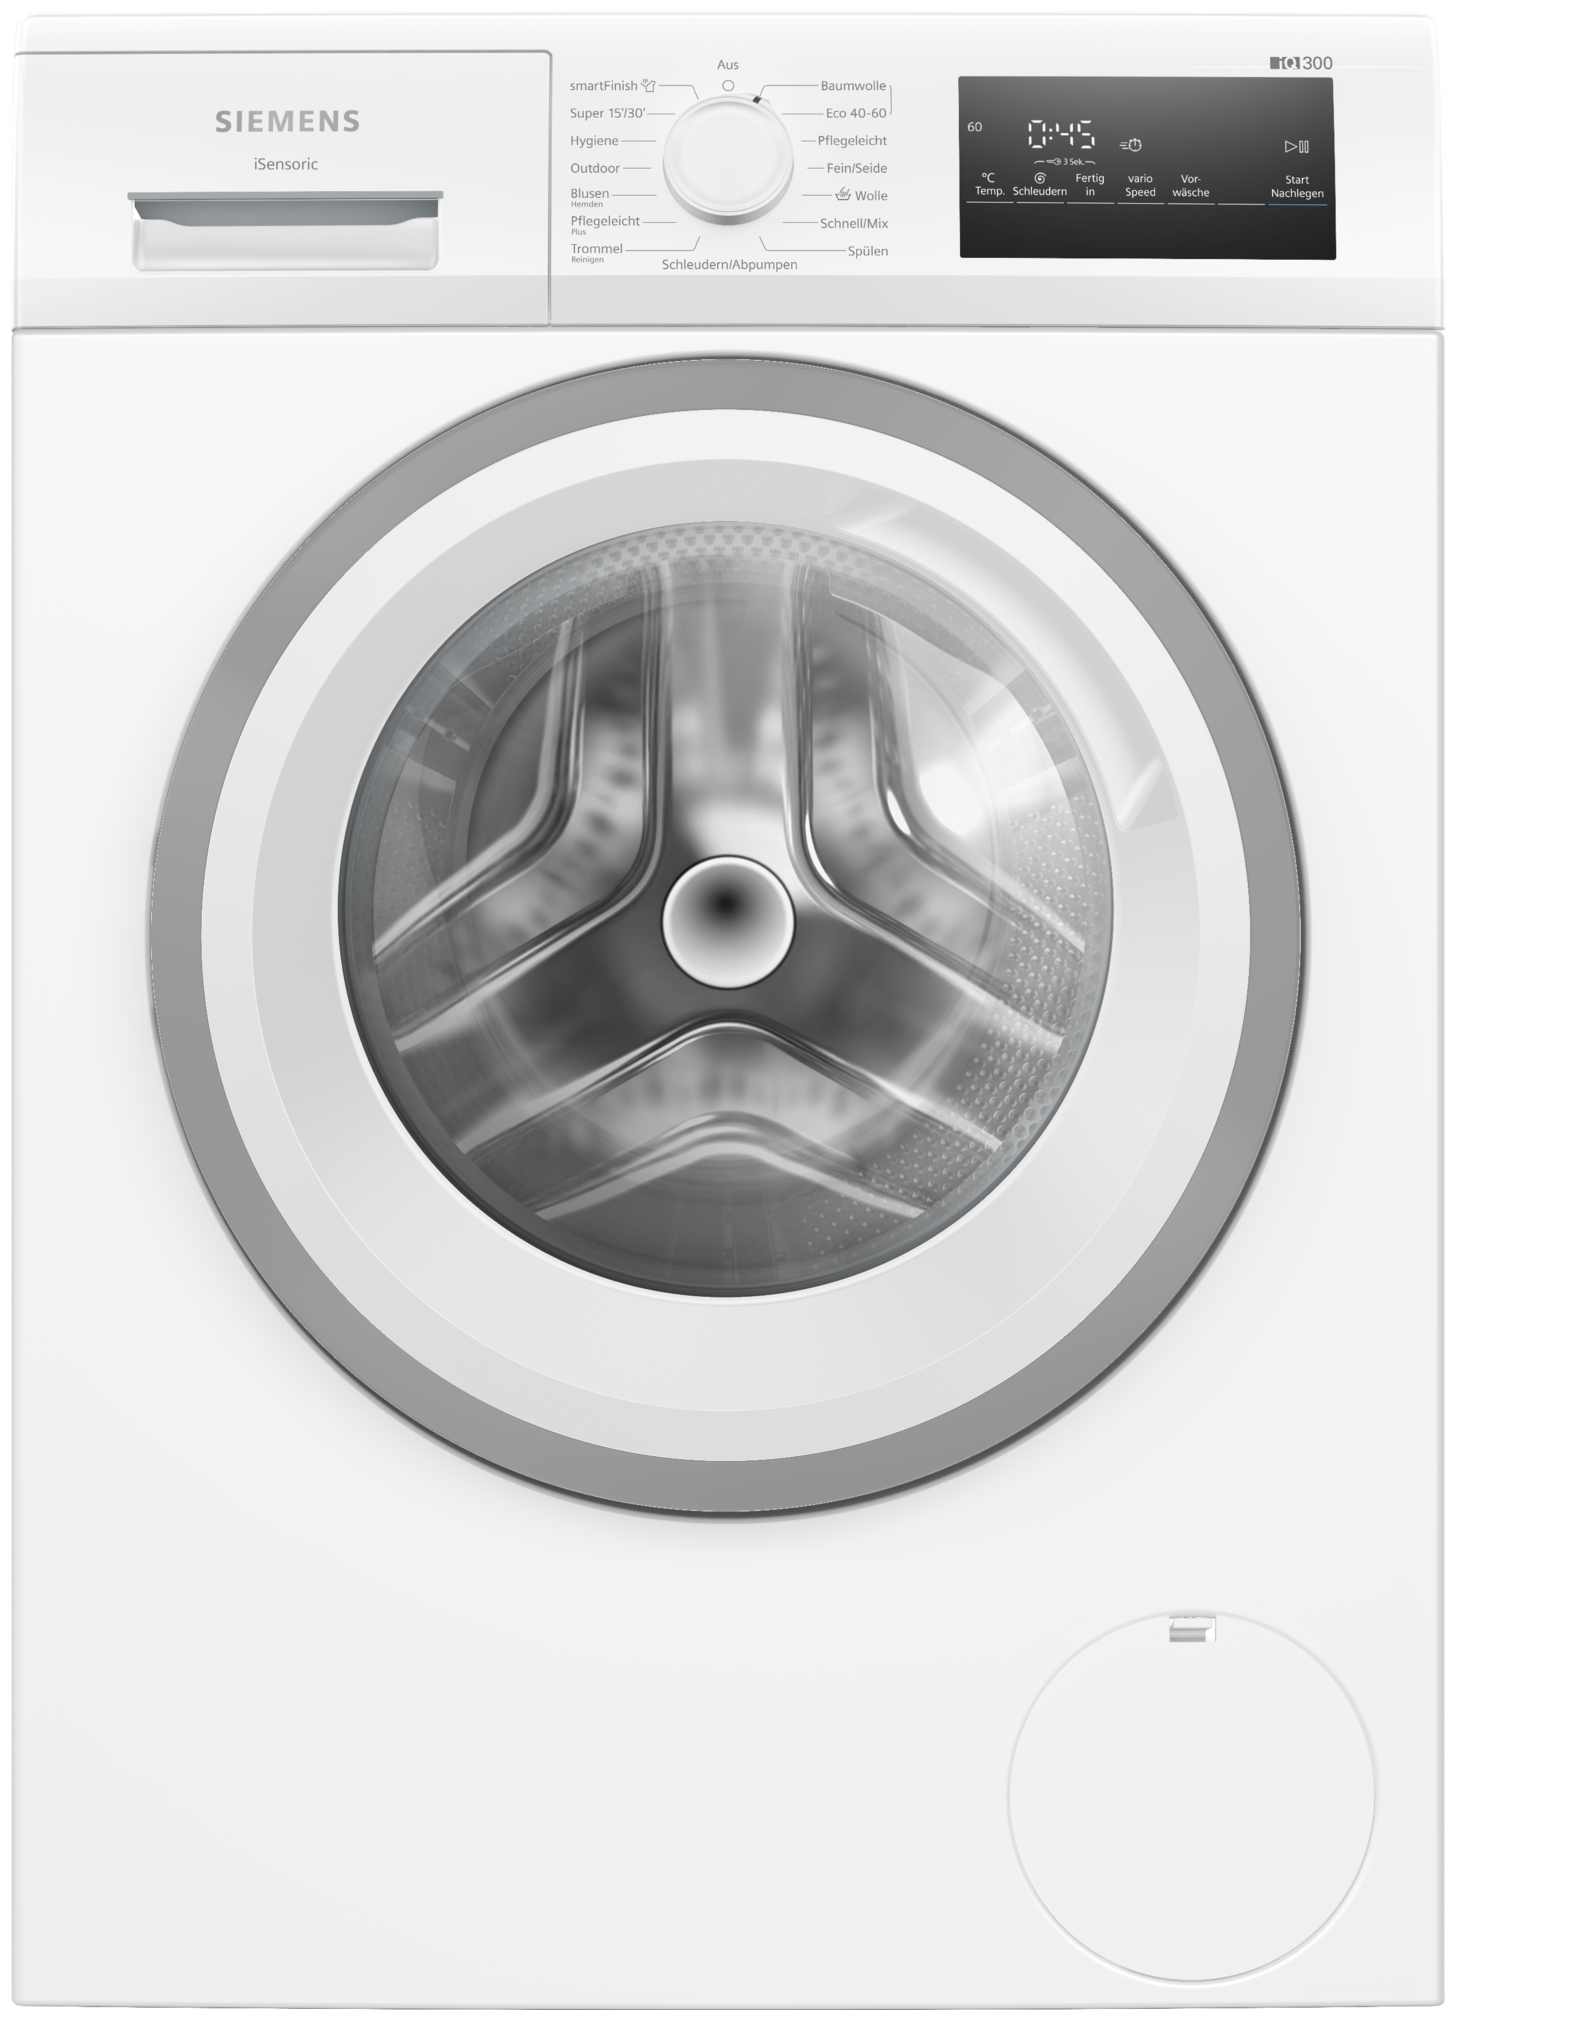 8 Waschmaschine U/min EEK: Technomarkt A AutoClean Frontlader 1400 von aquaStop Siemens iQ300 WM14N127 kg expert